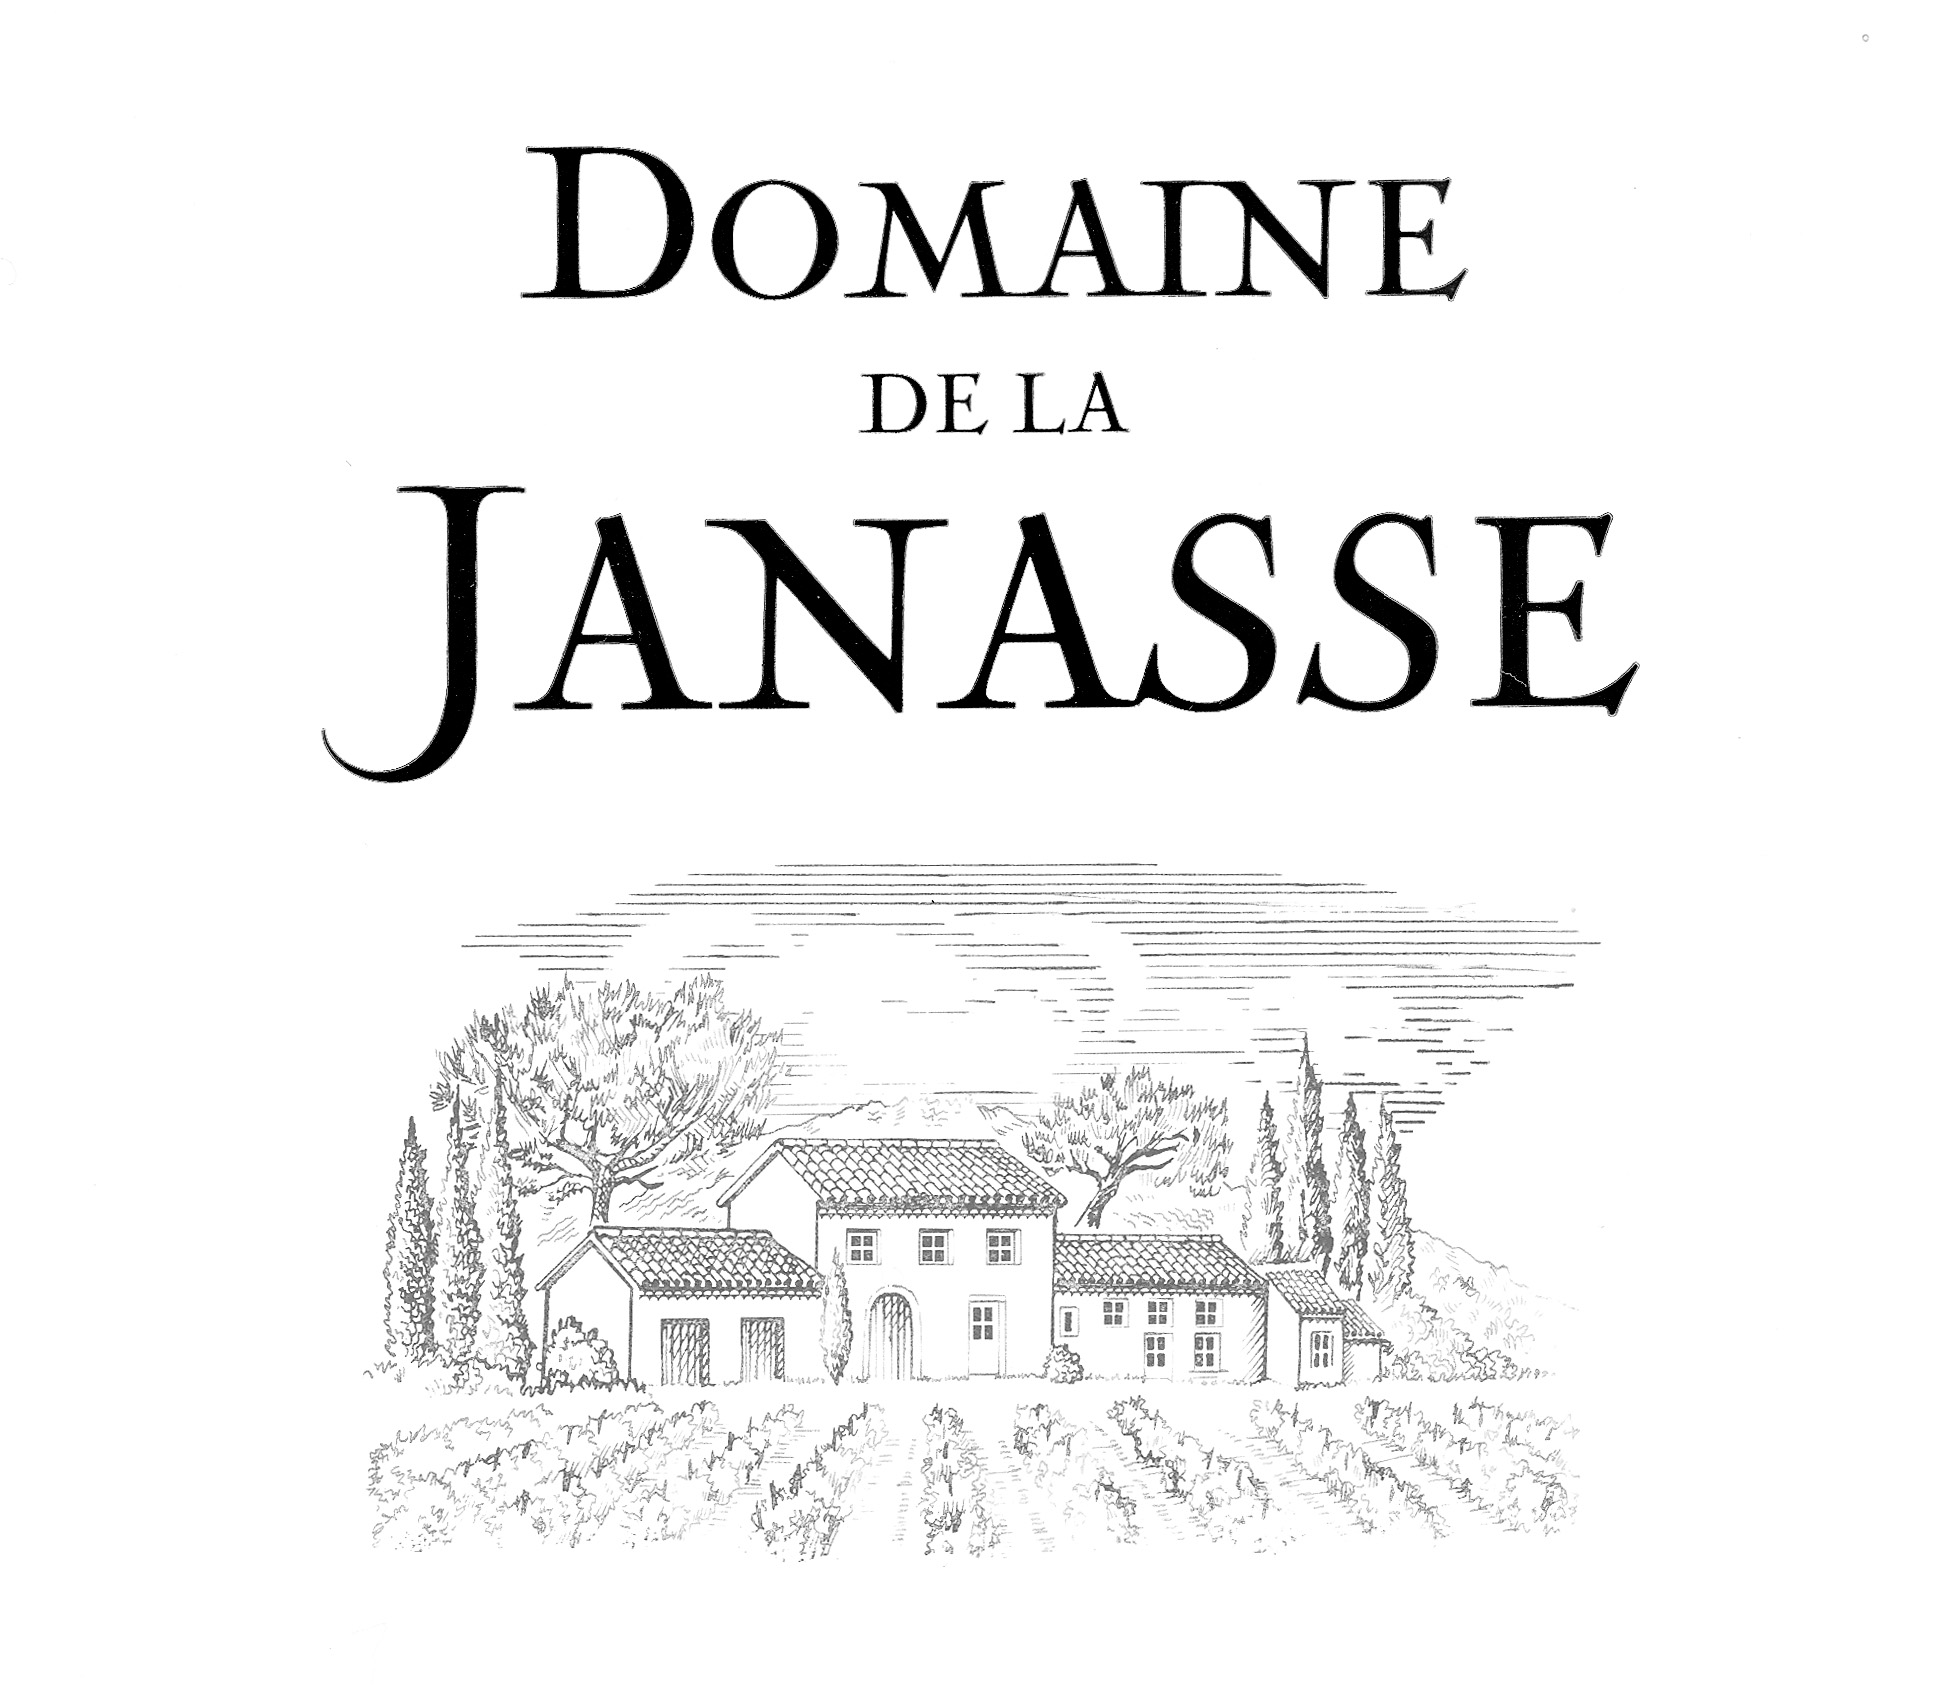 Domaine de la Janasse